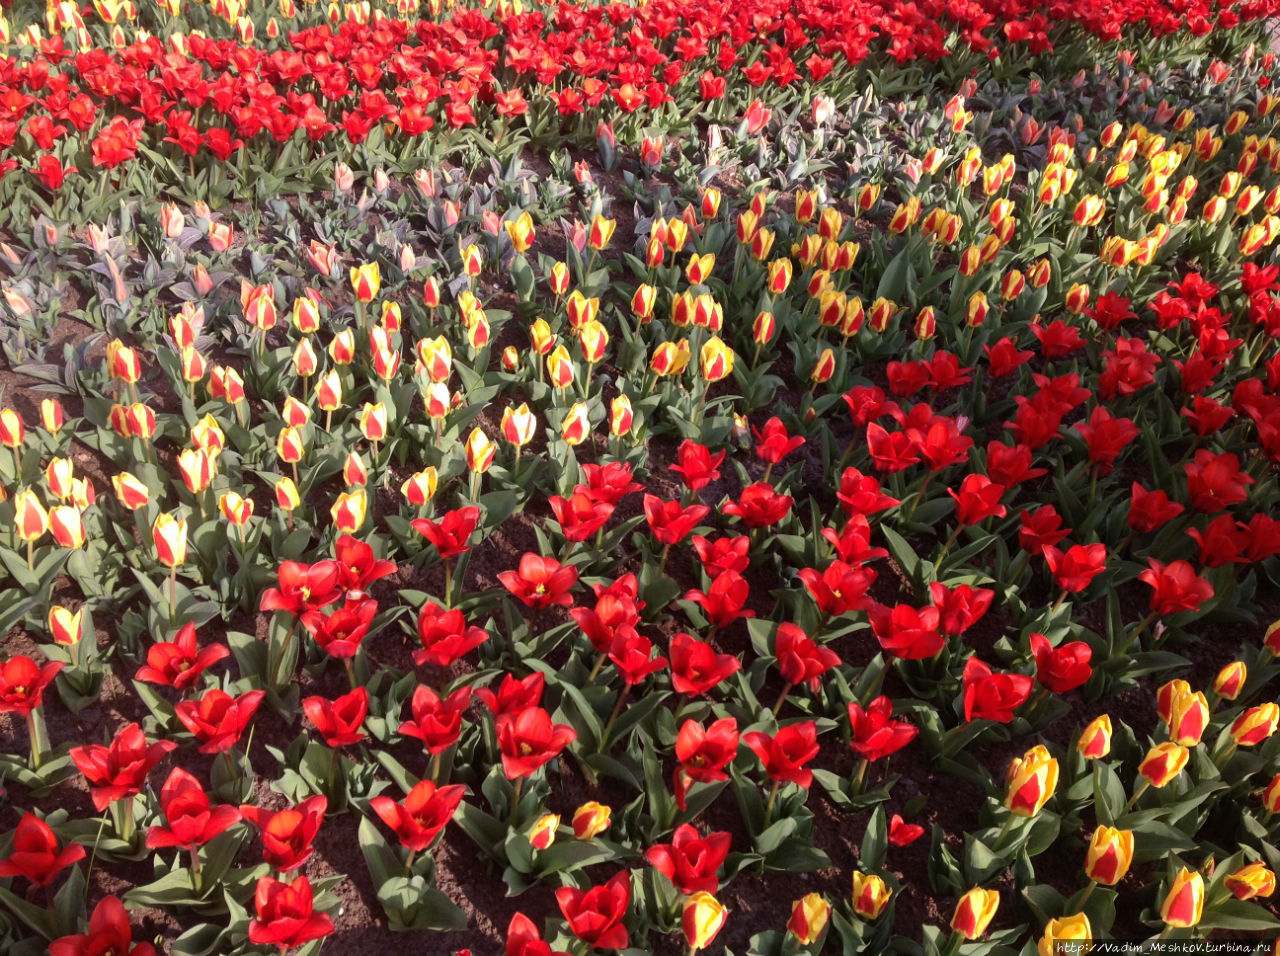 Парк был спроектирован в 1840 году ландшафтными архитекторами Зохерами, которые в своё время спроектировали разбивку Вонделпарка в Амстердаме. Впервые выставка цветов в Кёкенхофе прошла в 1949 году по инициативе бургомистра города Лиссе господина Ламбоя. Теперь Кёкенхоф ежегодно посещают более 800 тысяч туристов из разных стран. Кёкенхоф, Нидерланды